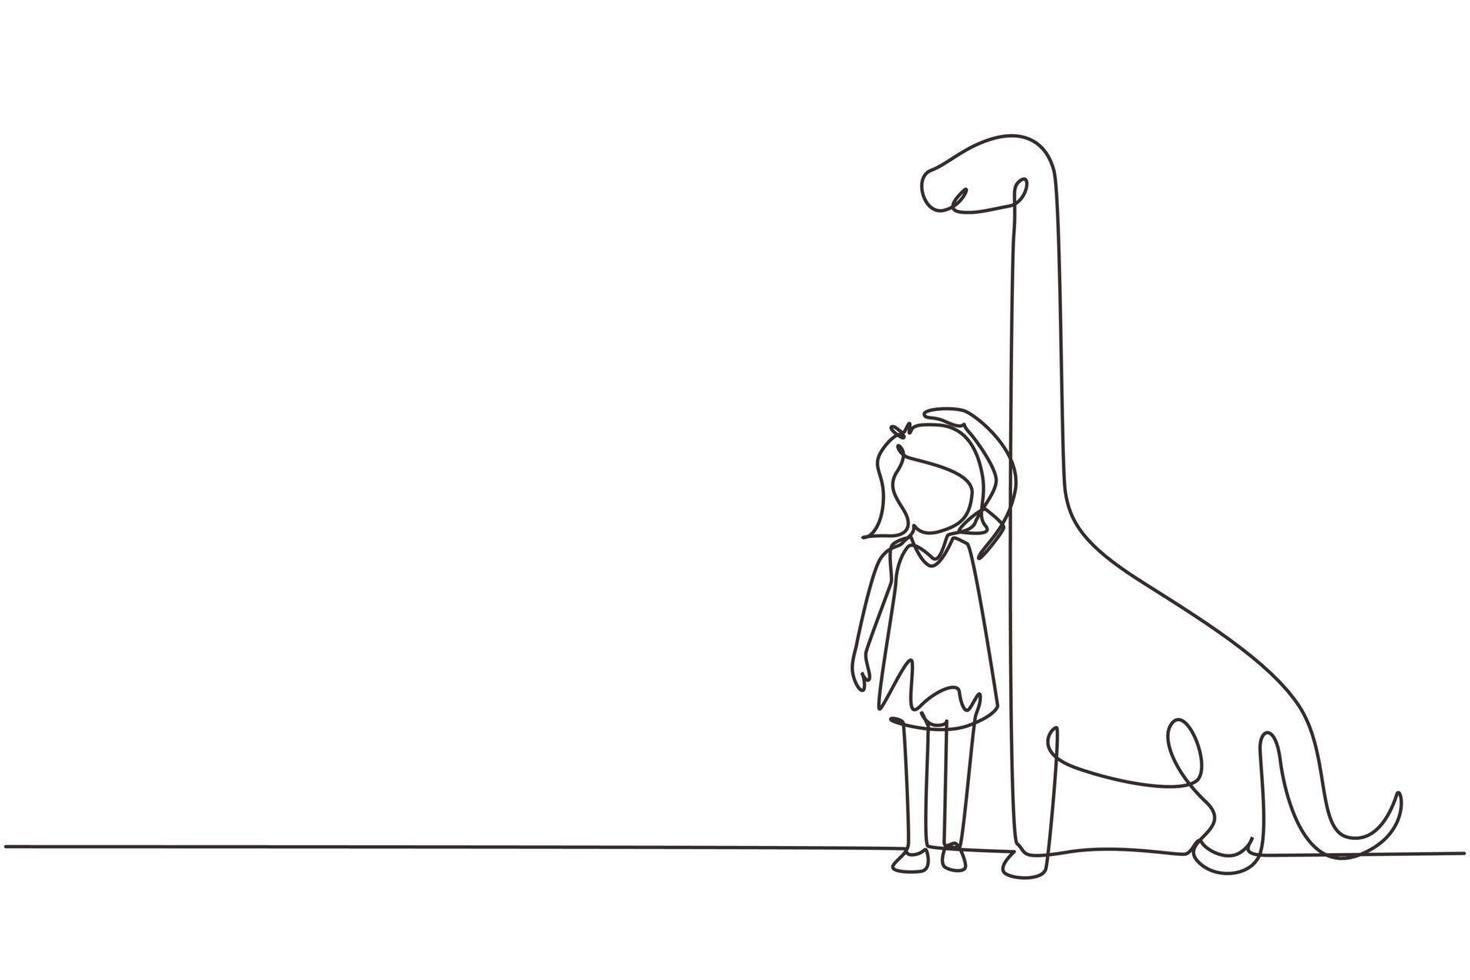 única menina de desenho de uma linha medindo sua altura com gráfico de altura de brontossauro na parede. criança mede o crescimento. criança medindo a altura. ilustração em vetor gráfico de desenho de linha contínua